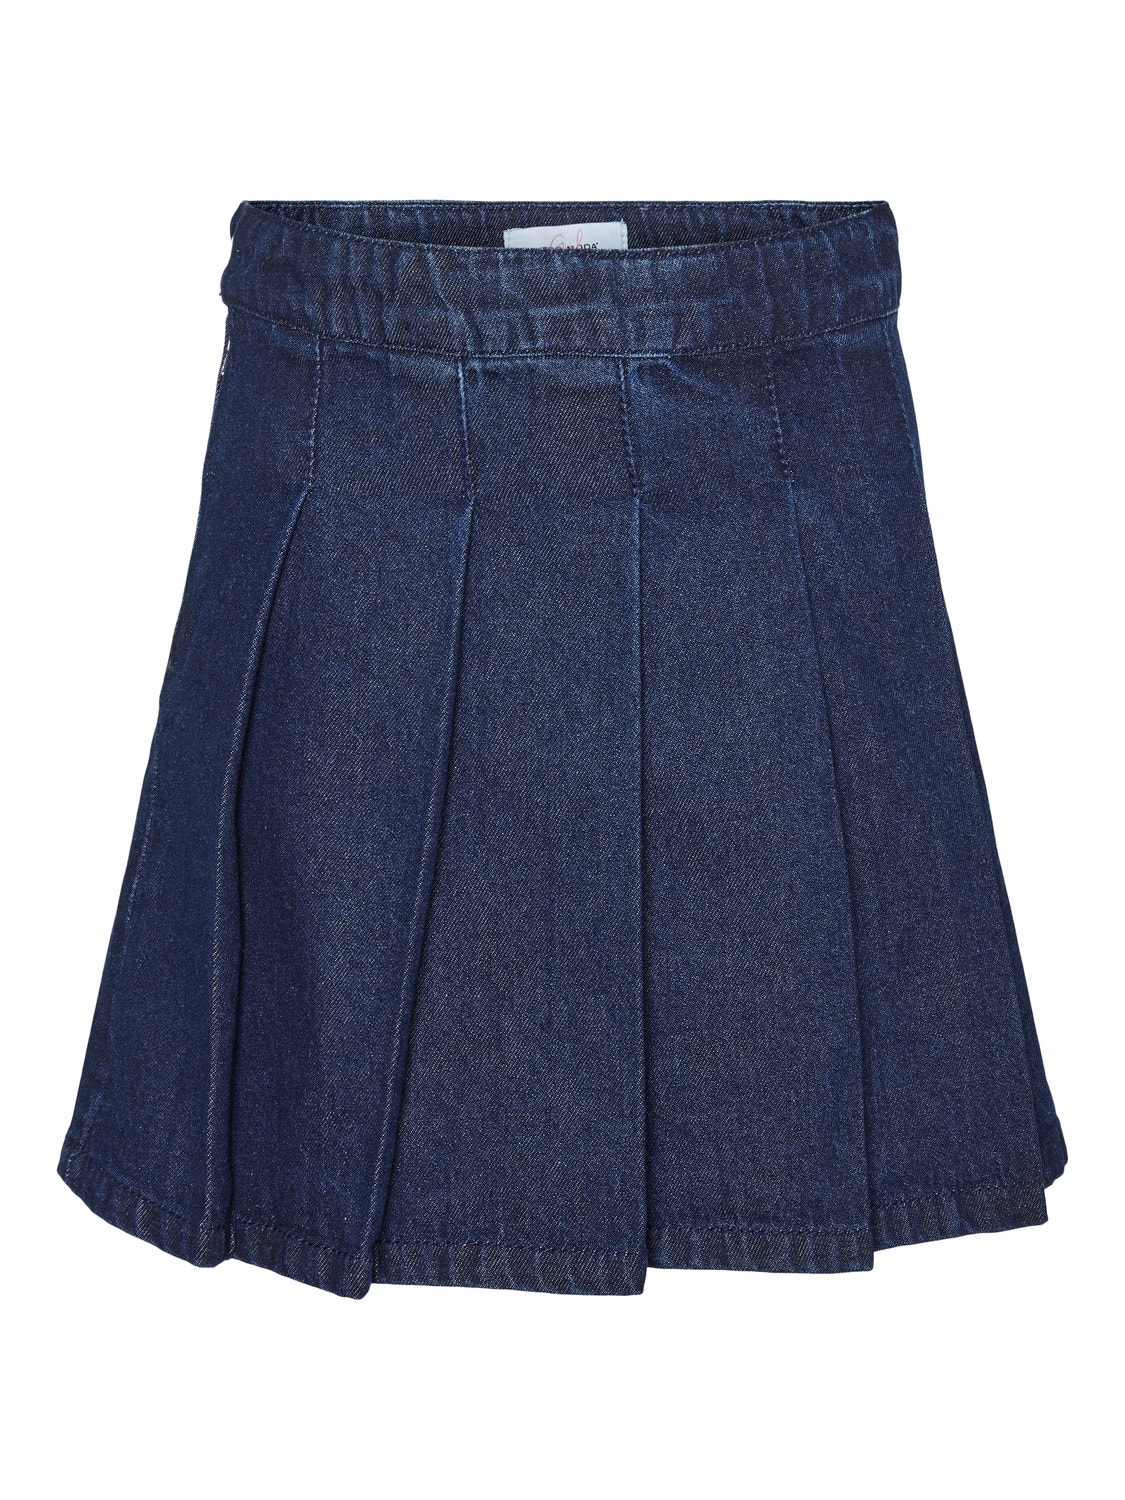 Vero Moda VMPERNILLE Short skirt -Medium Blue Denim - 10294493